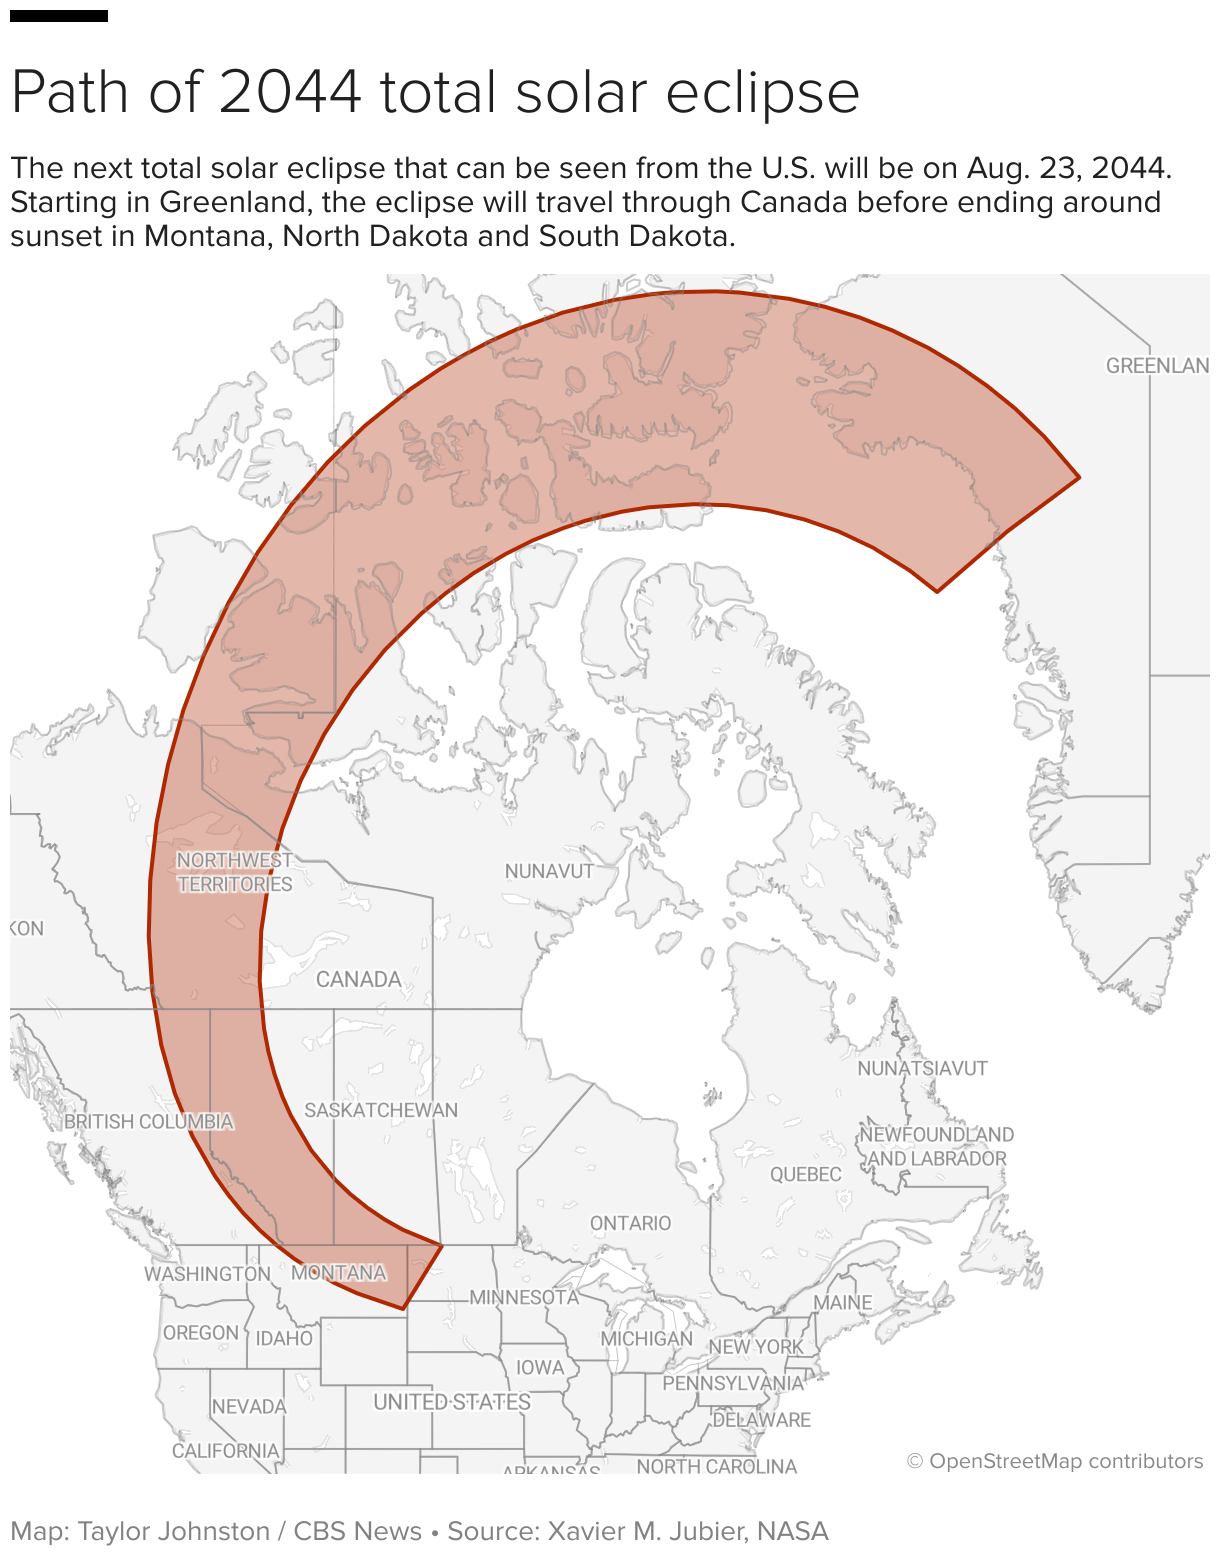 Karte mit dem Verlauf der totalen Sonnenfinsternis im Jahr 2044 in Grönland, Kanada und Teilen der Vereinigten Staaten.